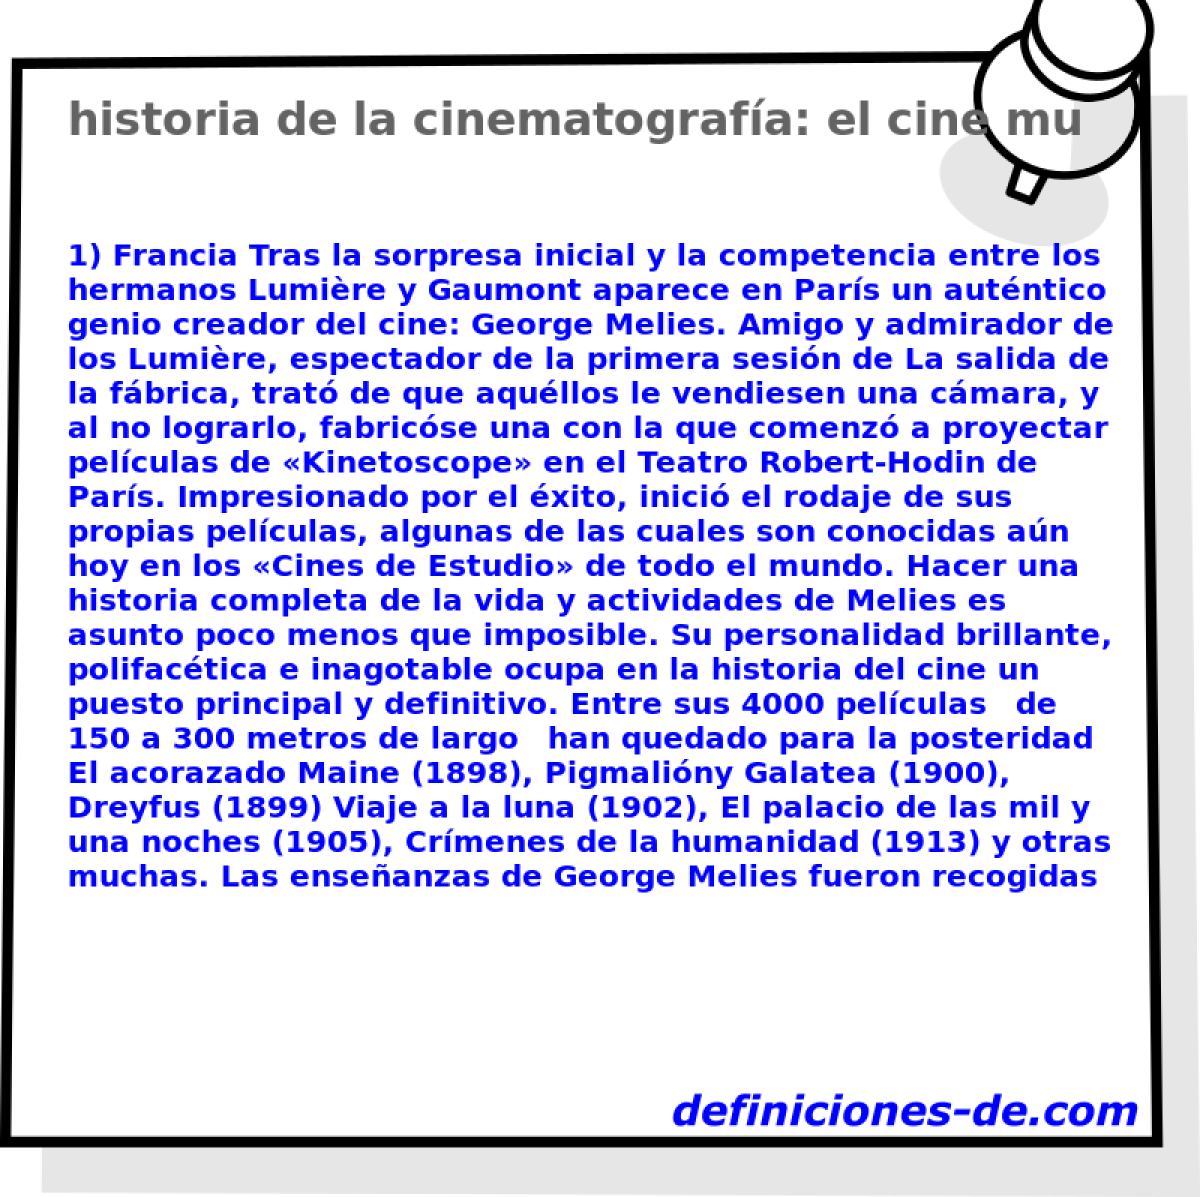 historia de la cinematografa: el cine mudo (1898-1930) 